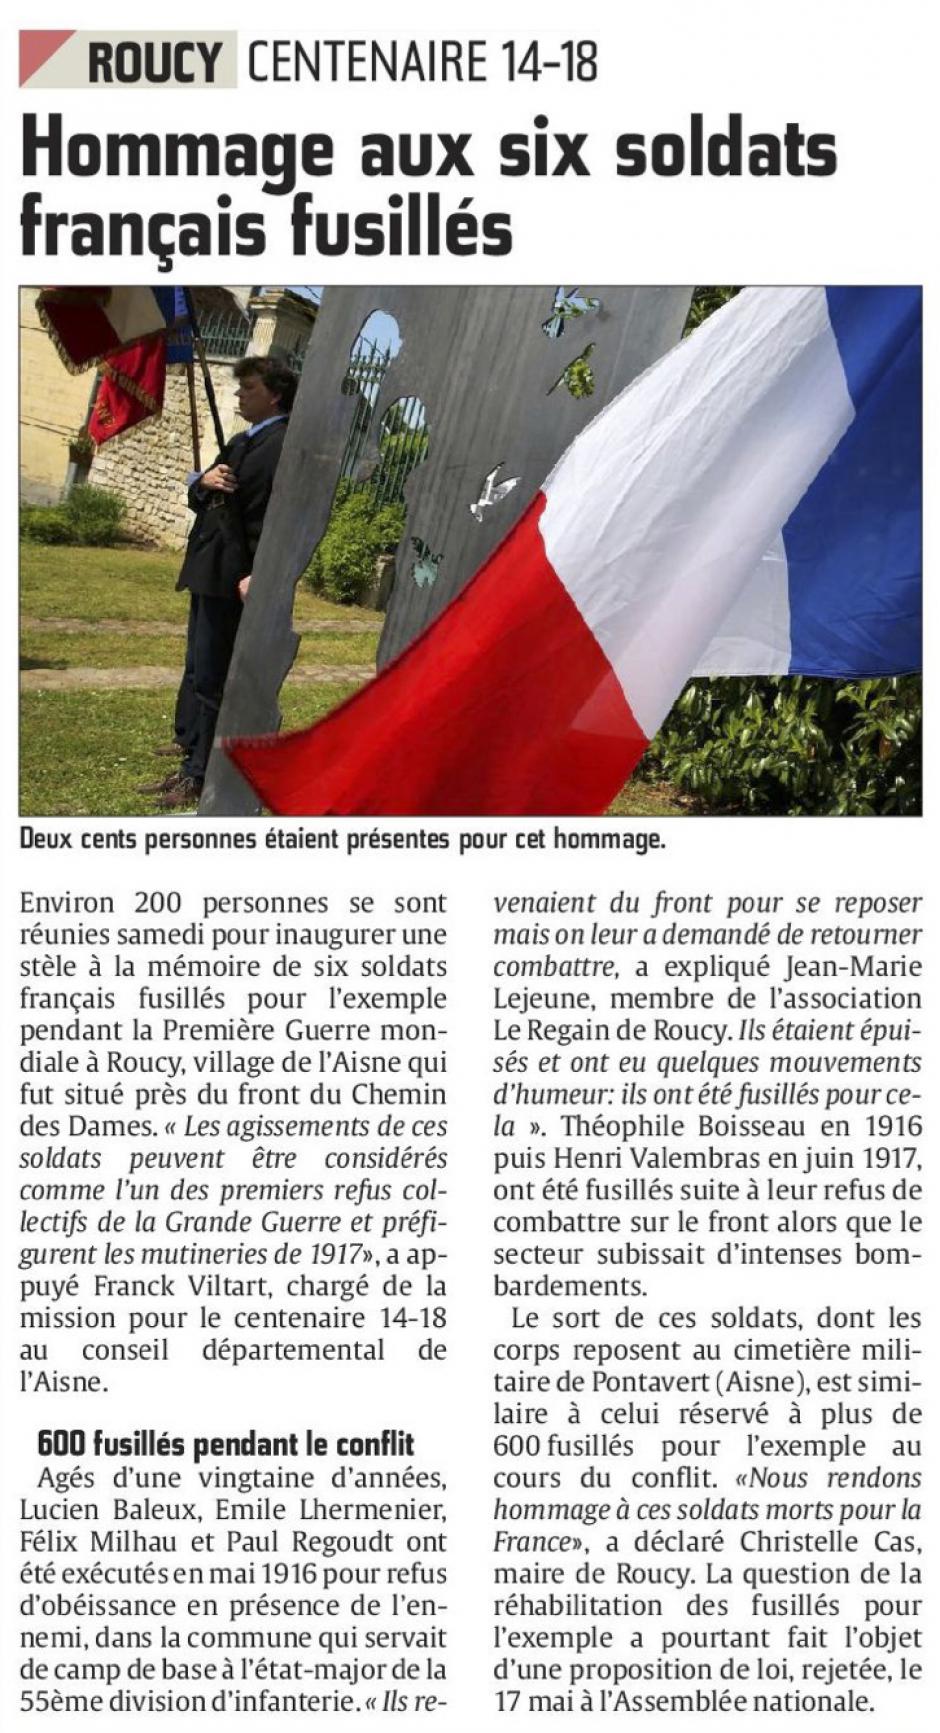 20160529-CP-Roucy-14-18 : Hommage aux six soldats français fusillés